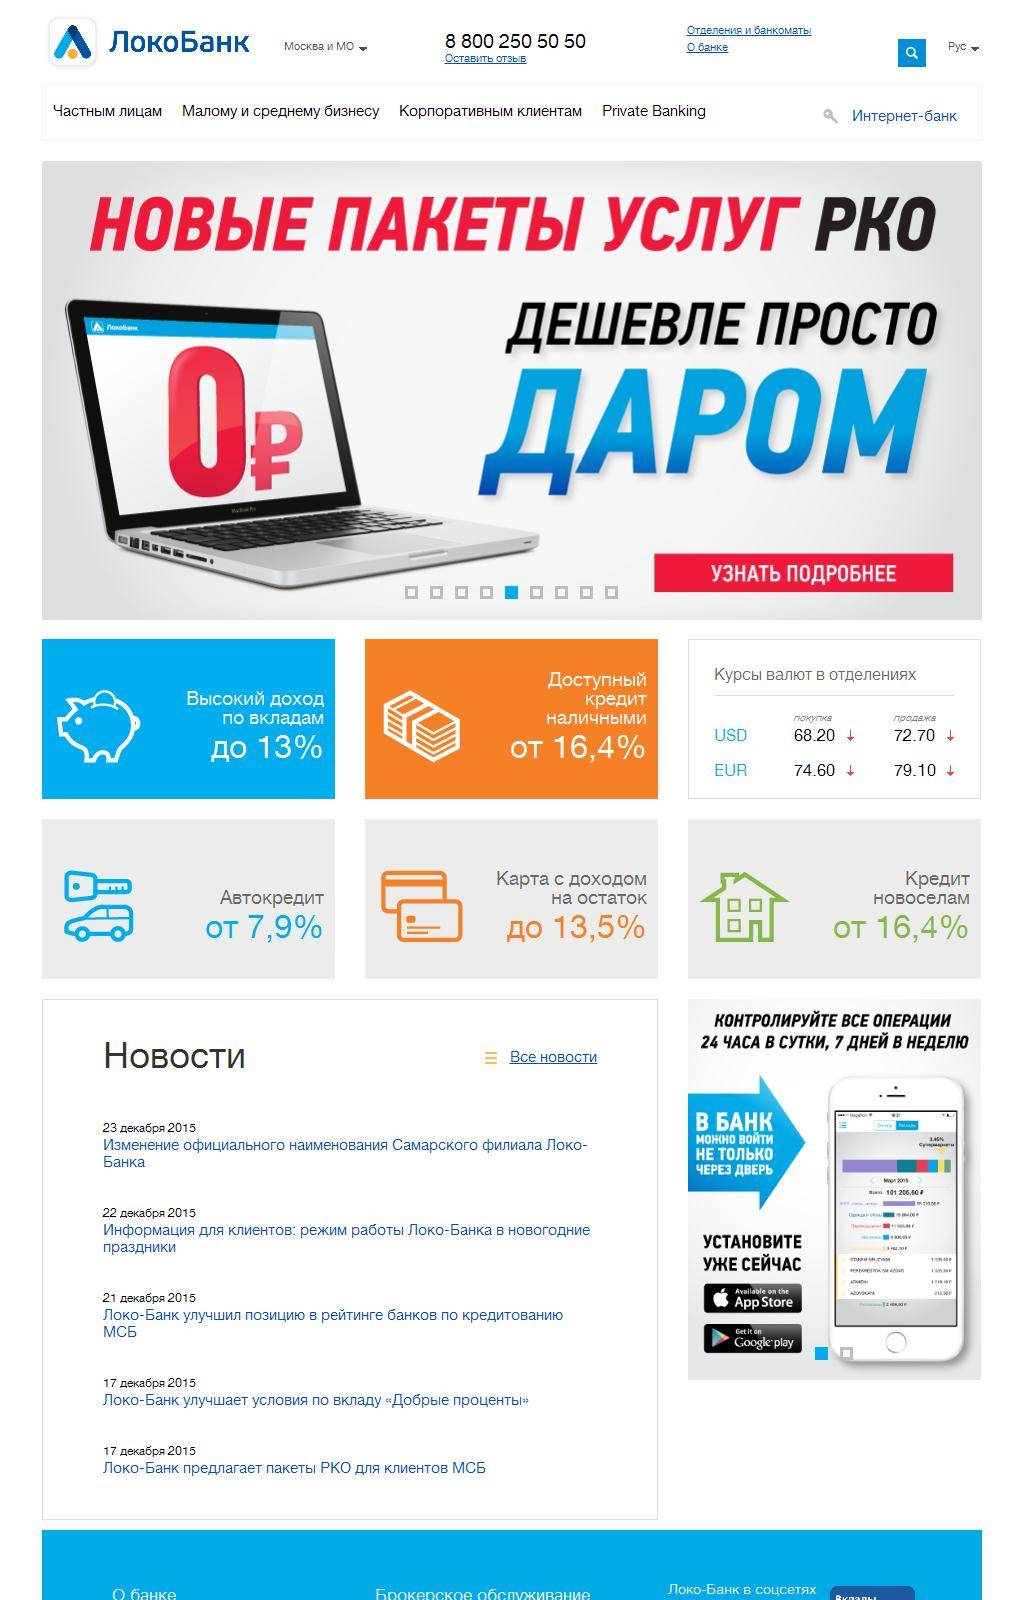 Отзывы об автокредитах локо-банка, мнения пользователей и клиентов банка на 05.01.2022 | банки.ру